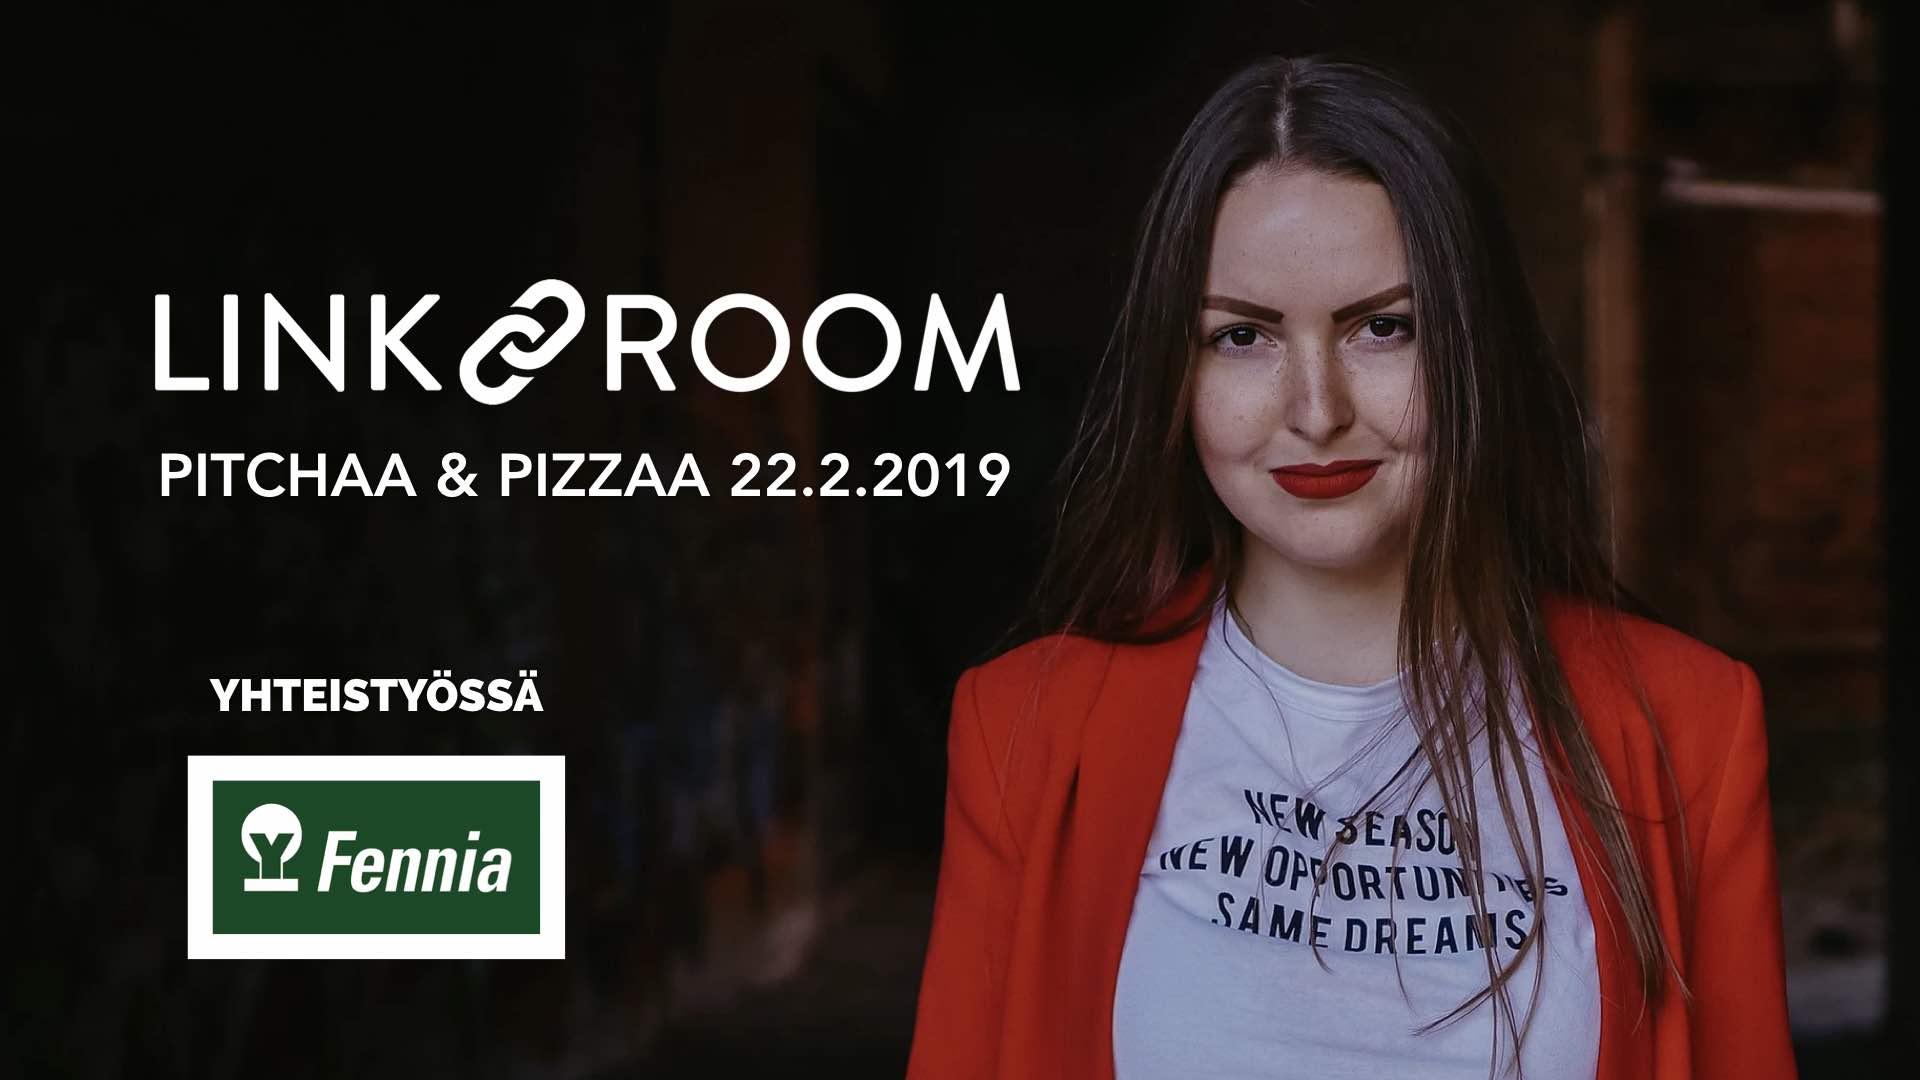 22.2.2019 – Pitchaa & Pizzaa (Hml)